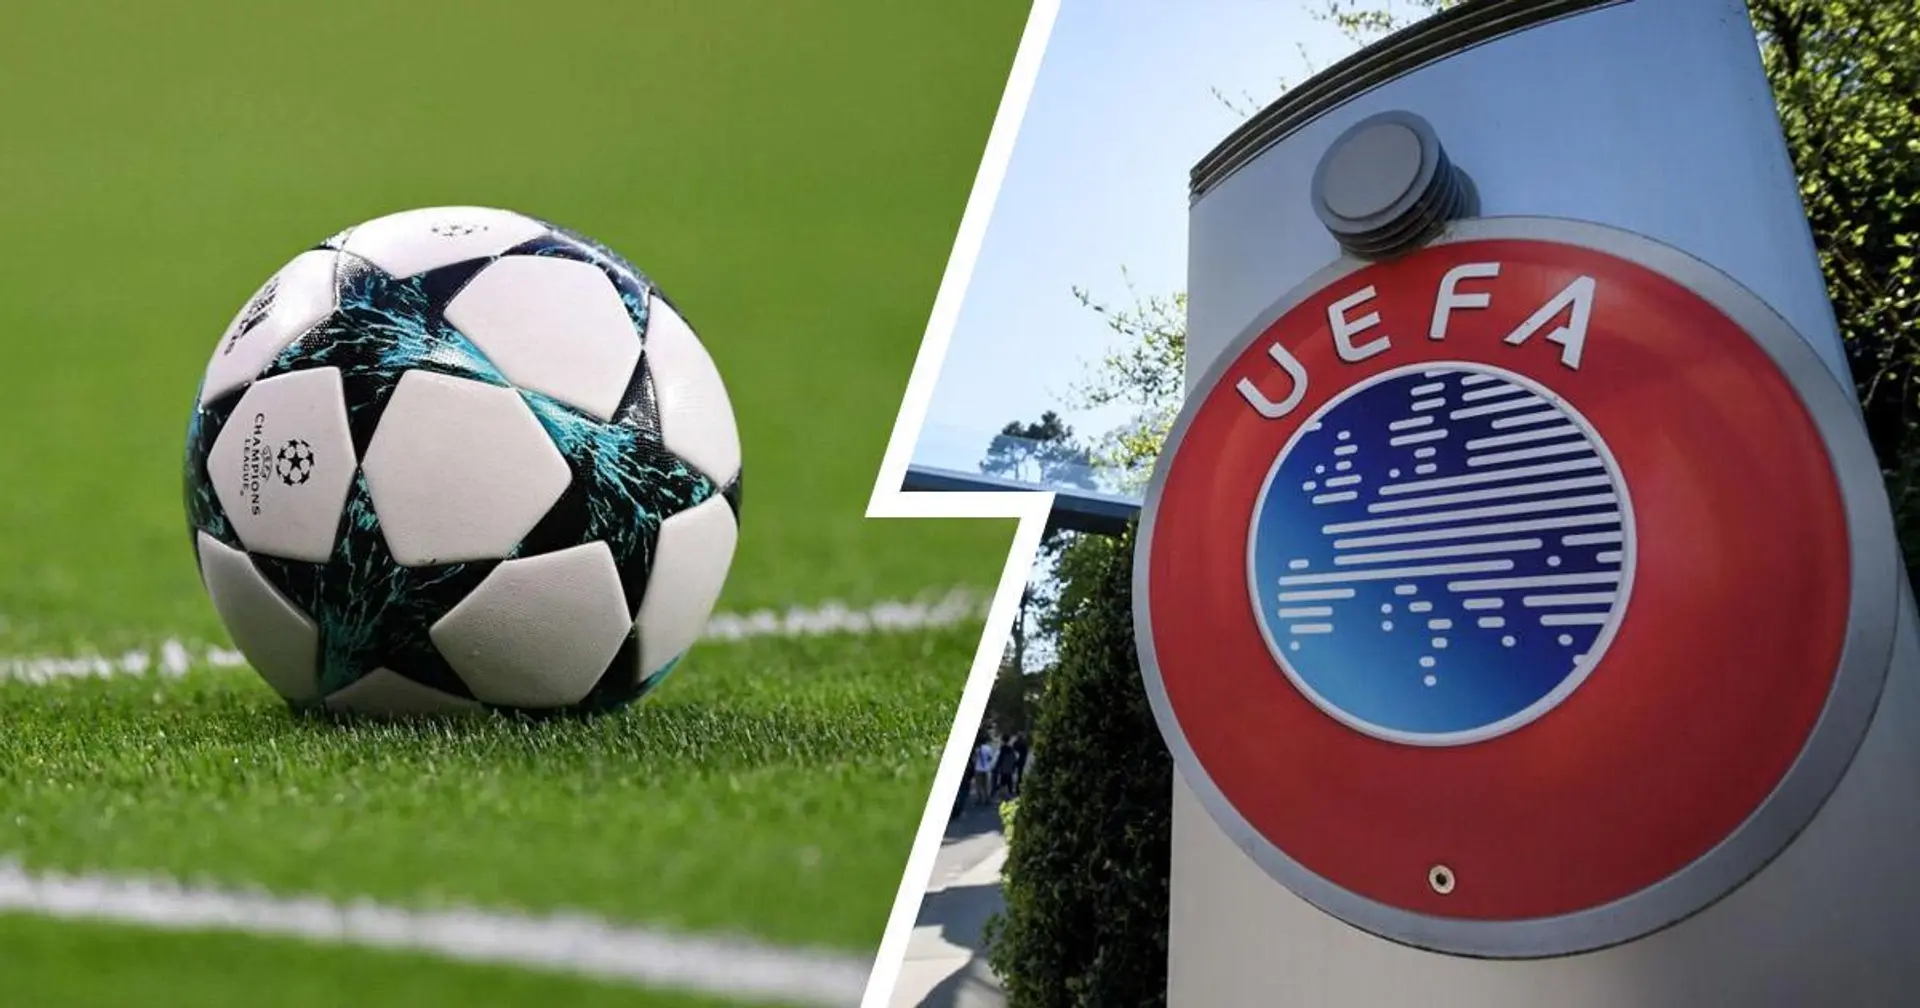 ⚡ OFFICIEL: l'UEFA supprime la règle du but à l'extérieur, changement appliqué dès la saison 2021/22